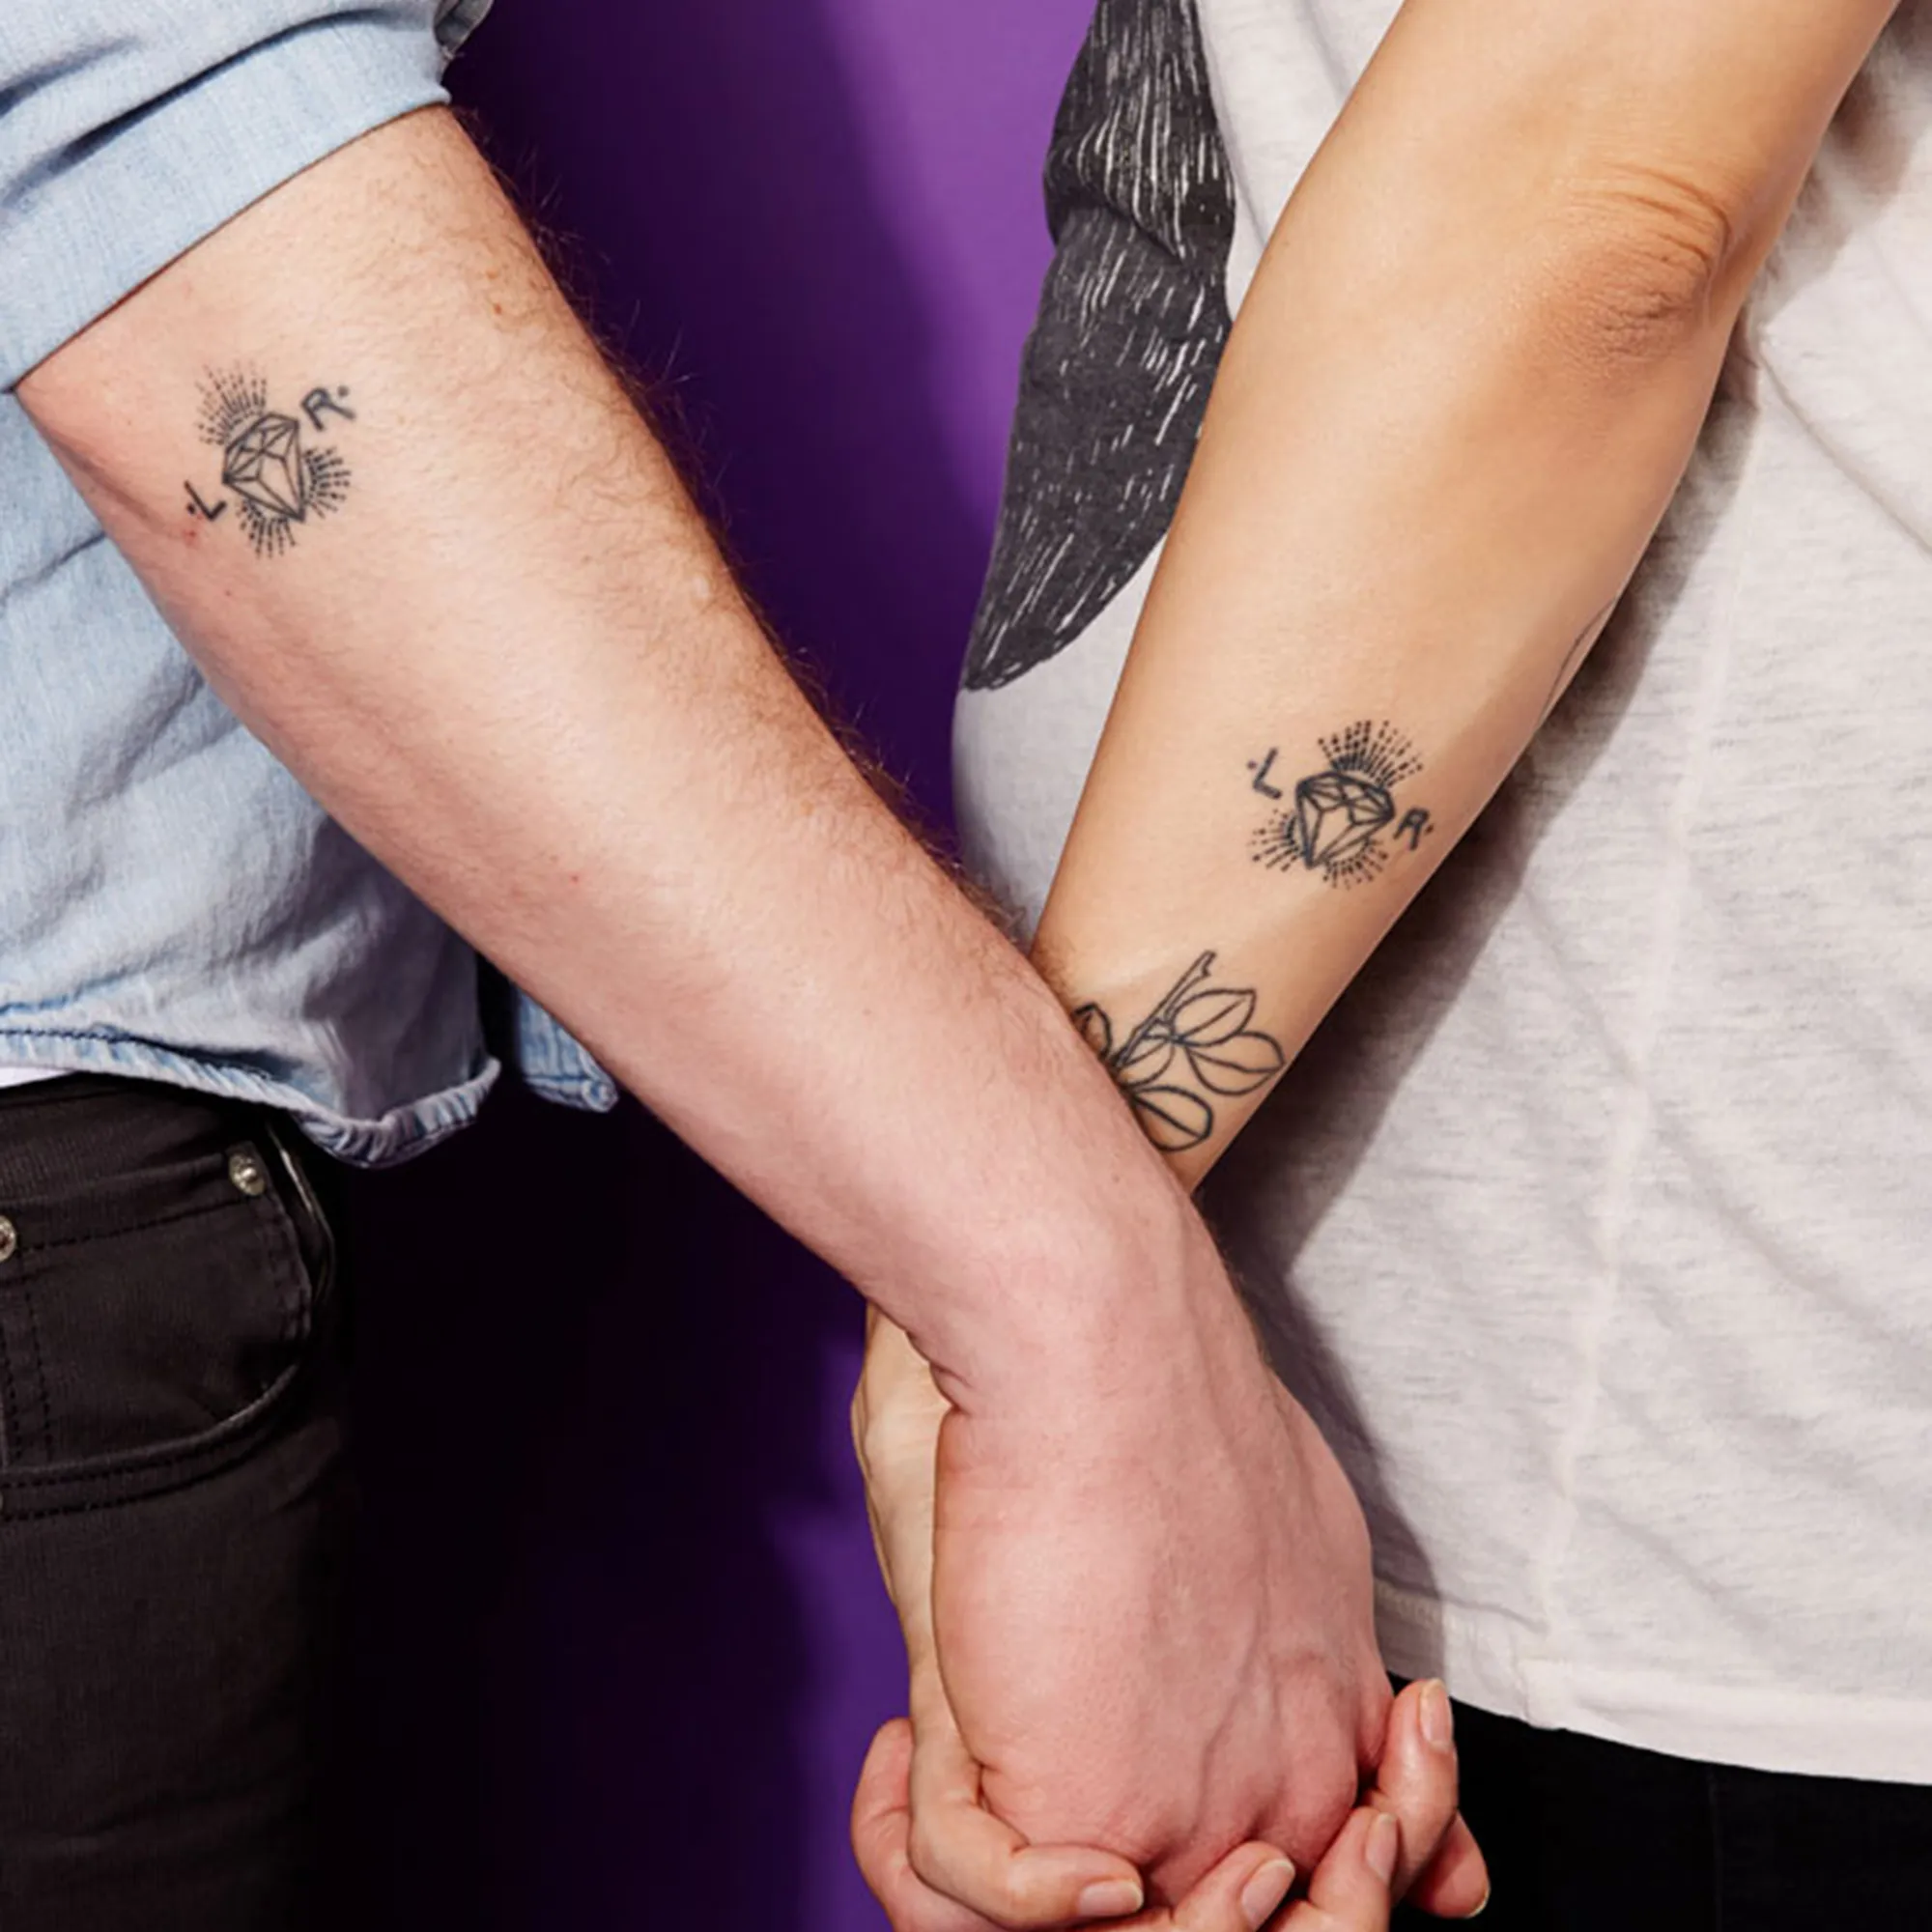 relationship matching tattoos